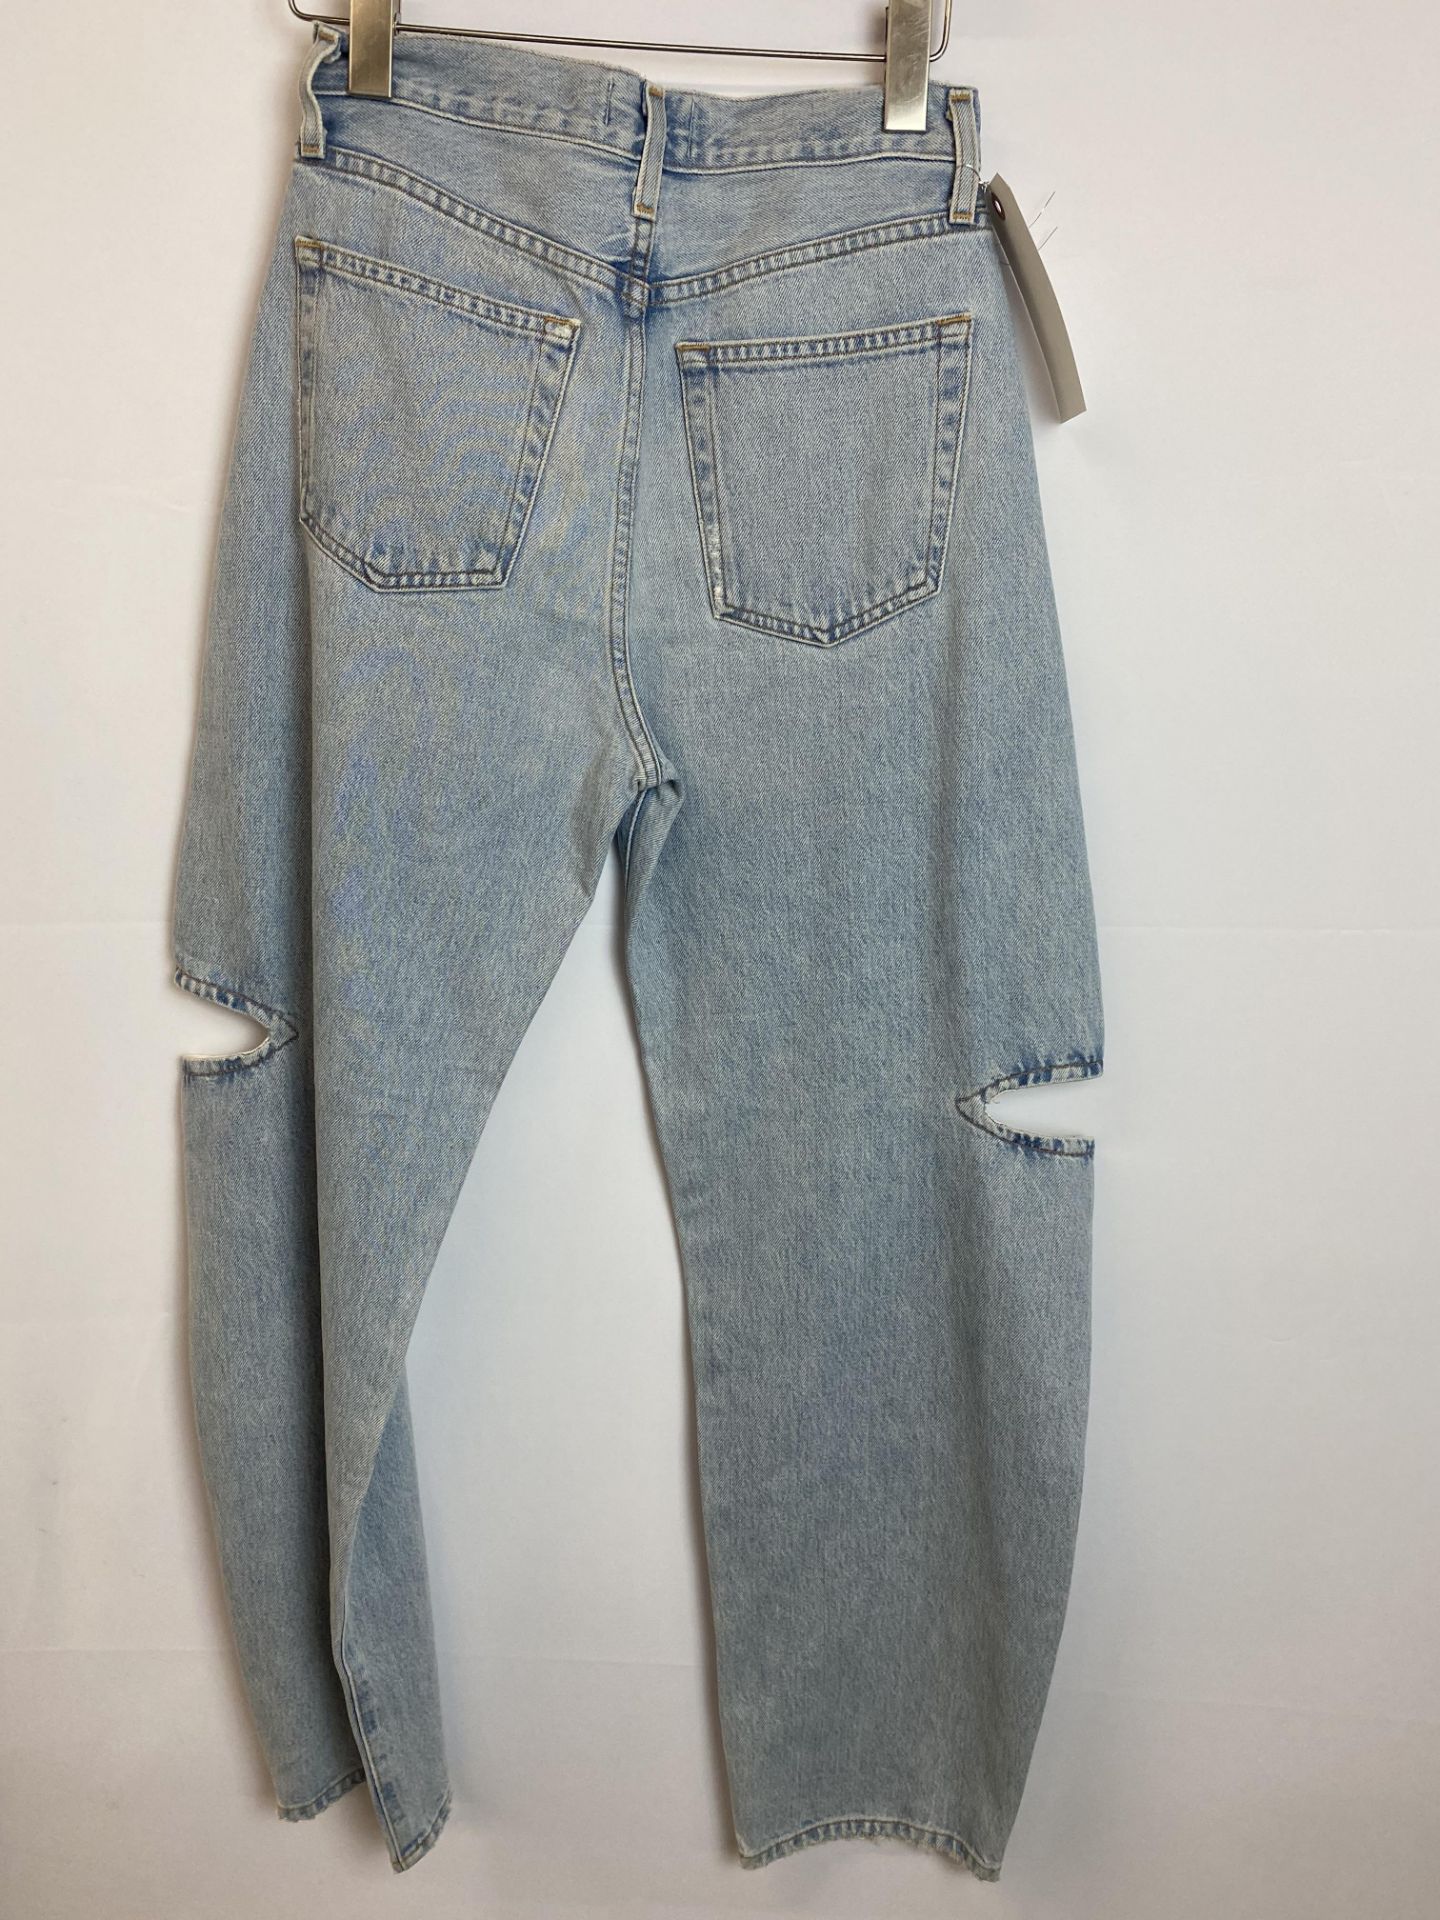 Agolde Denim LT Sarna in Sideline Jean, Size: 25, Original Retail Price: $248 - Bild 2 aus 4